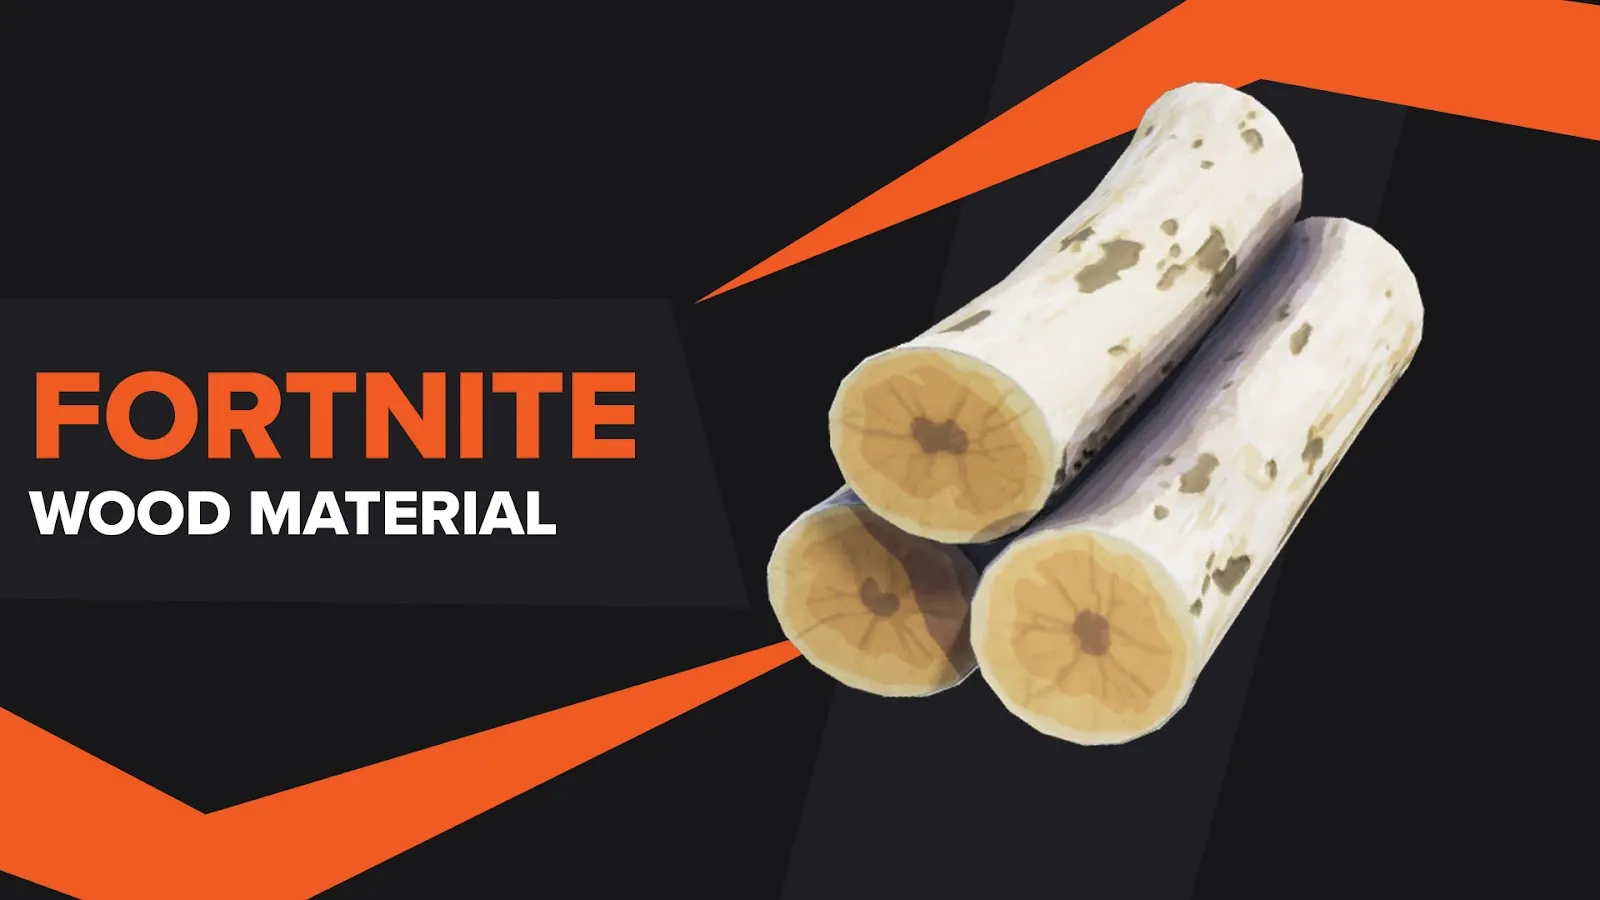 Wood Building Material Fortnite